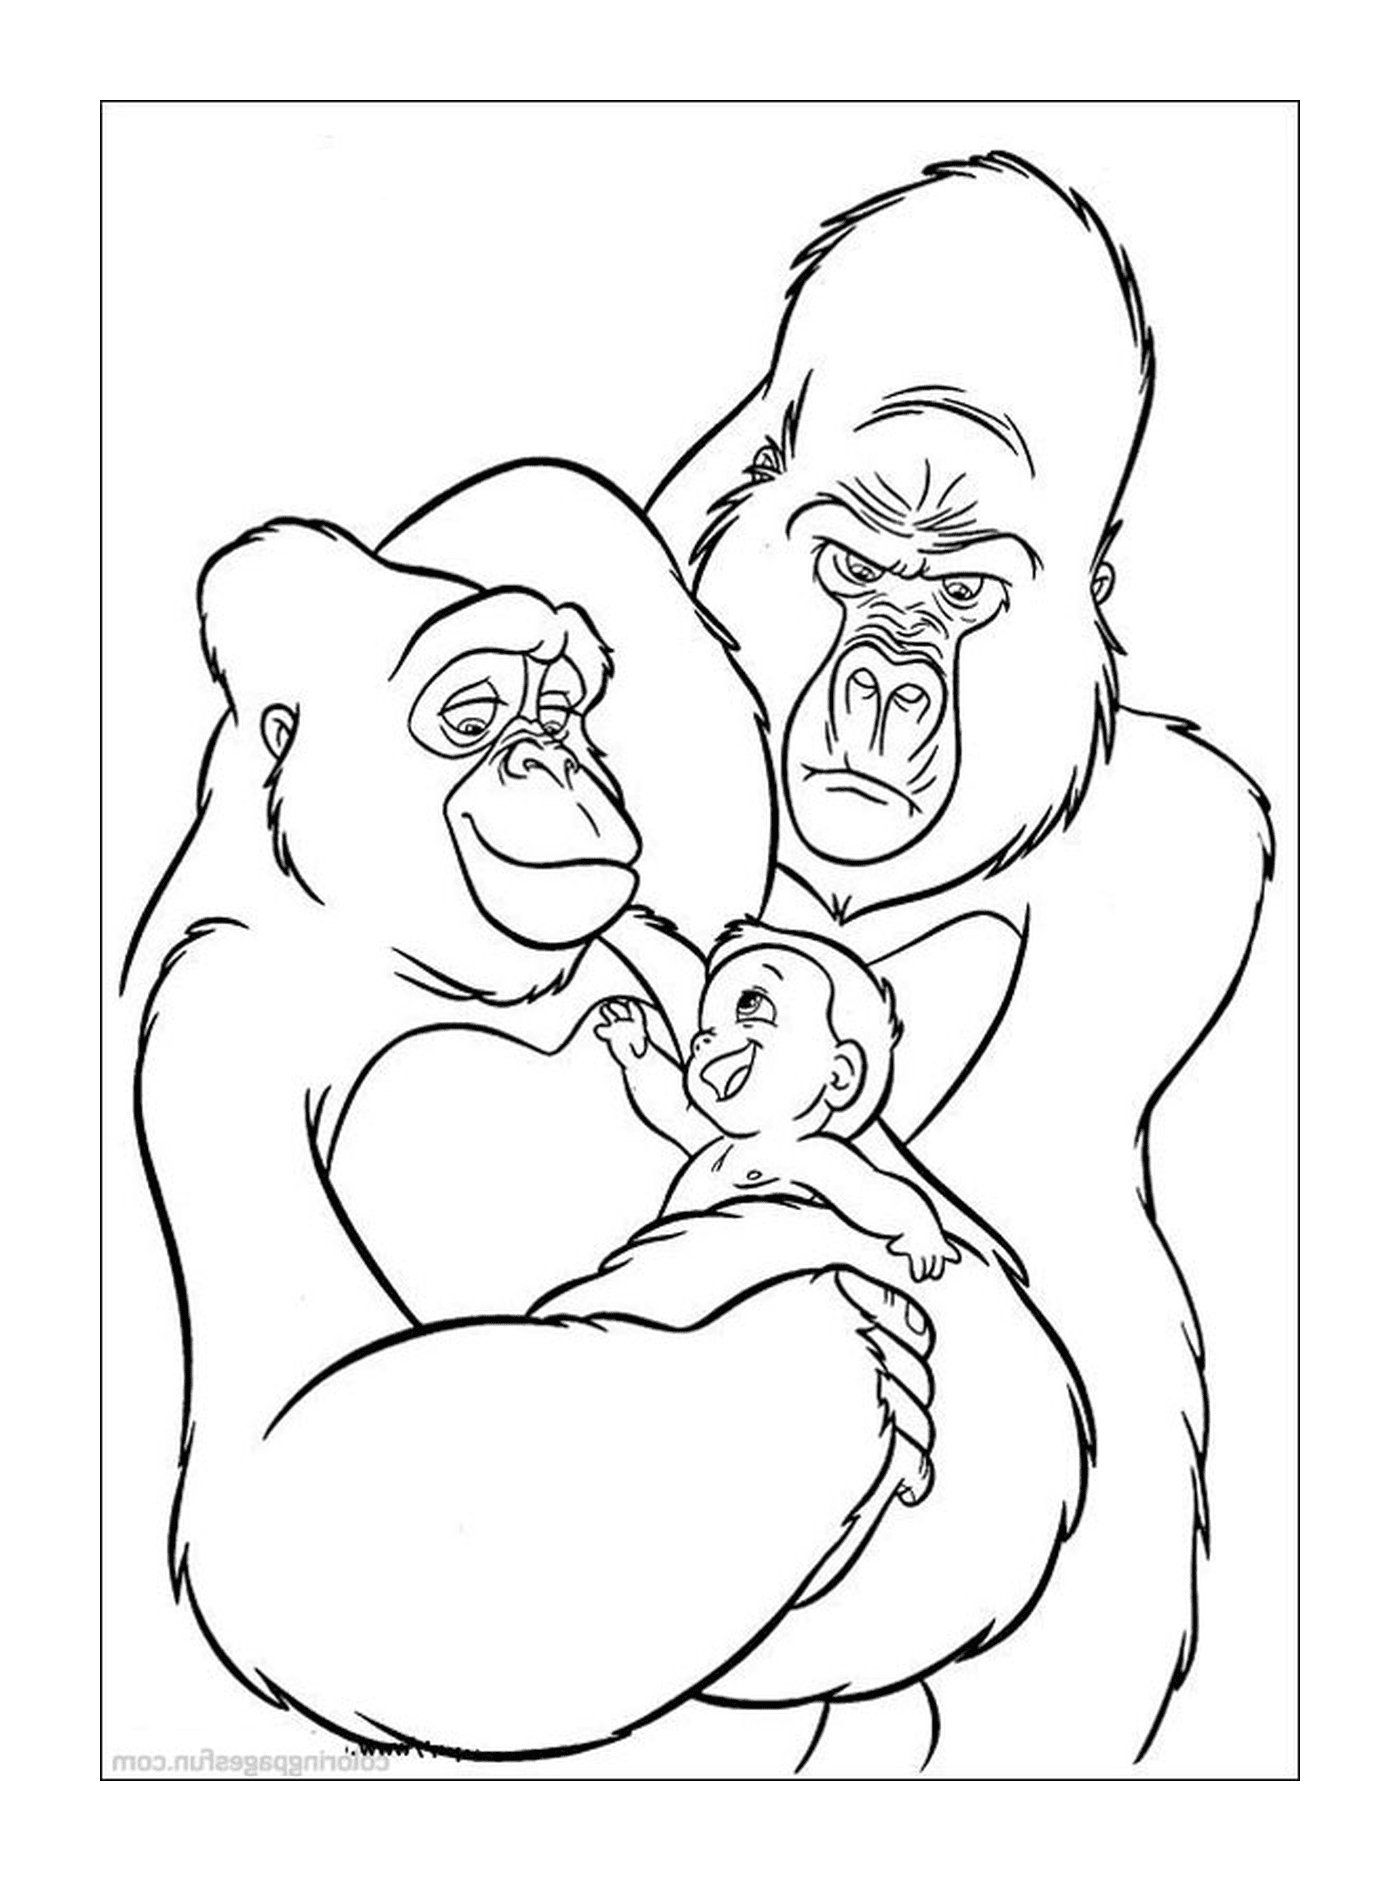  大猩猩和大猩猩宝宝 